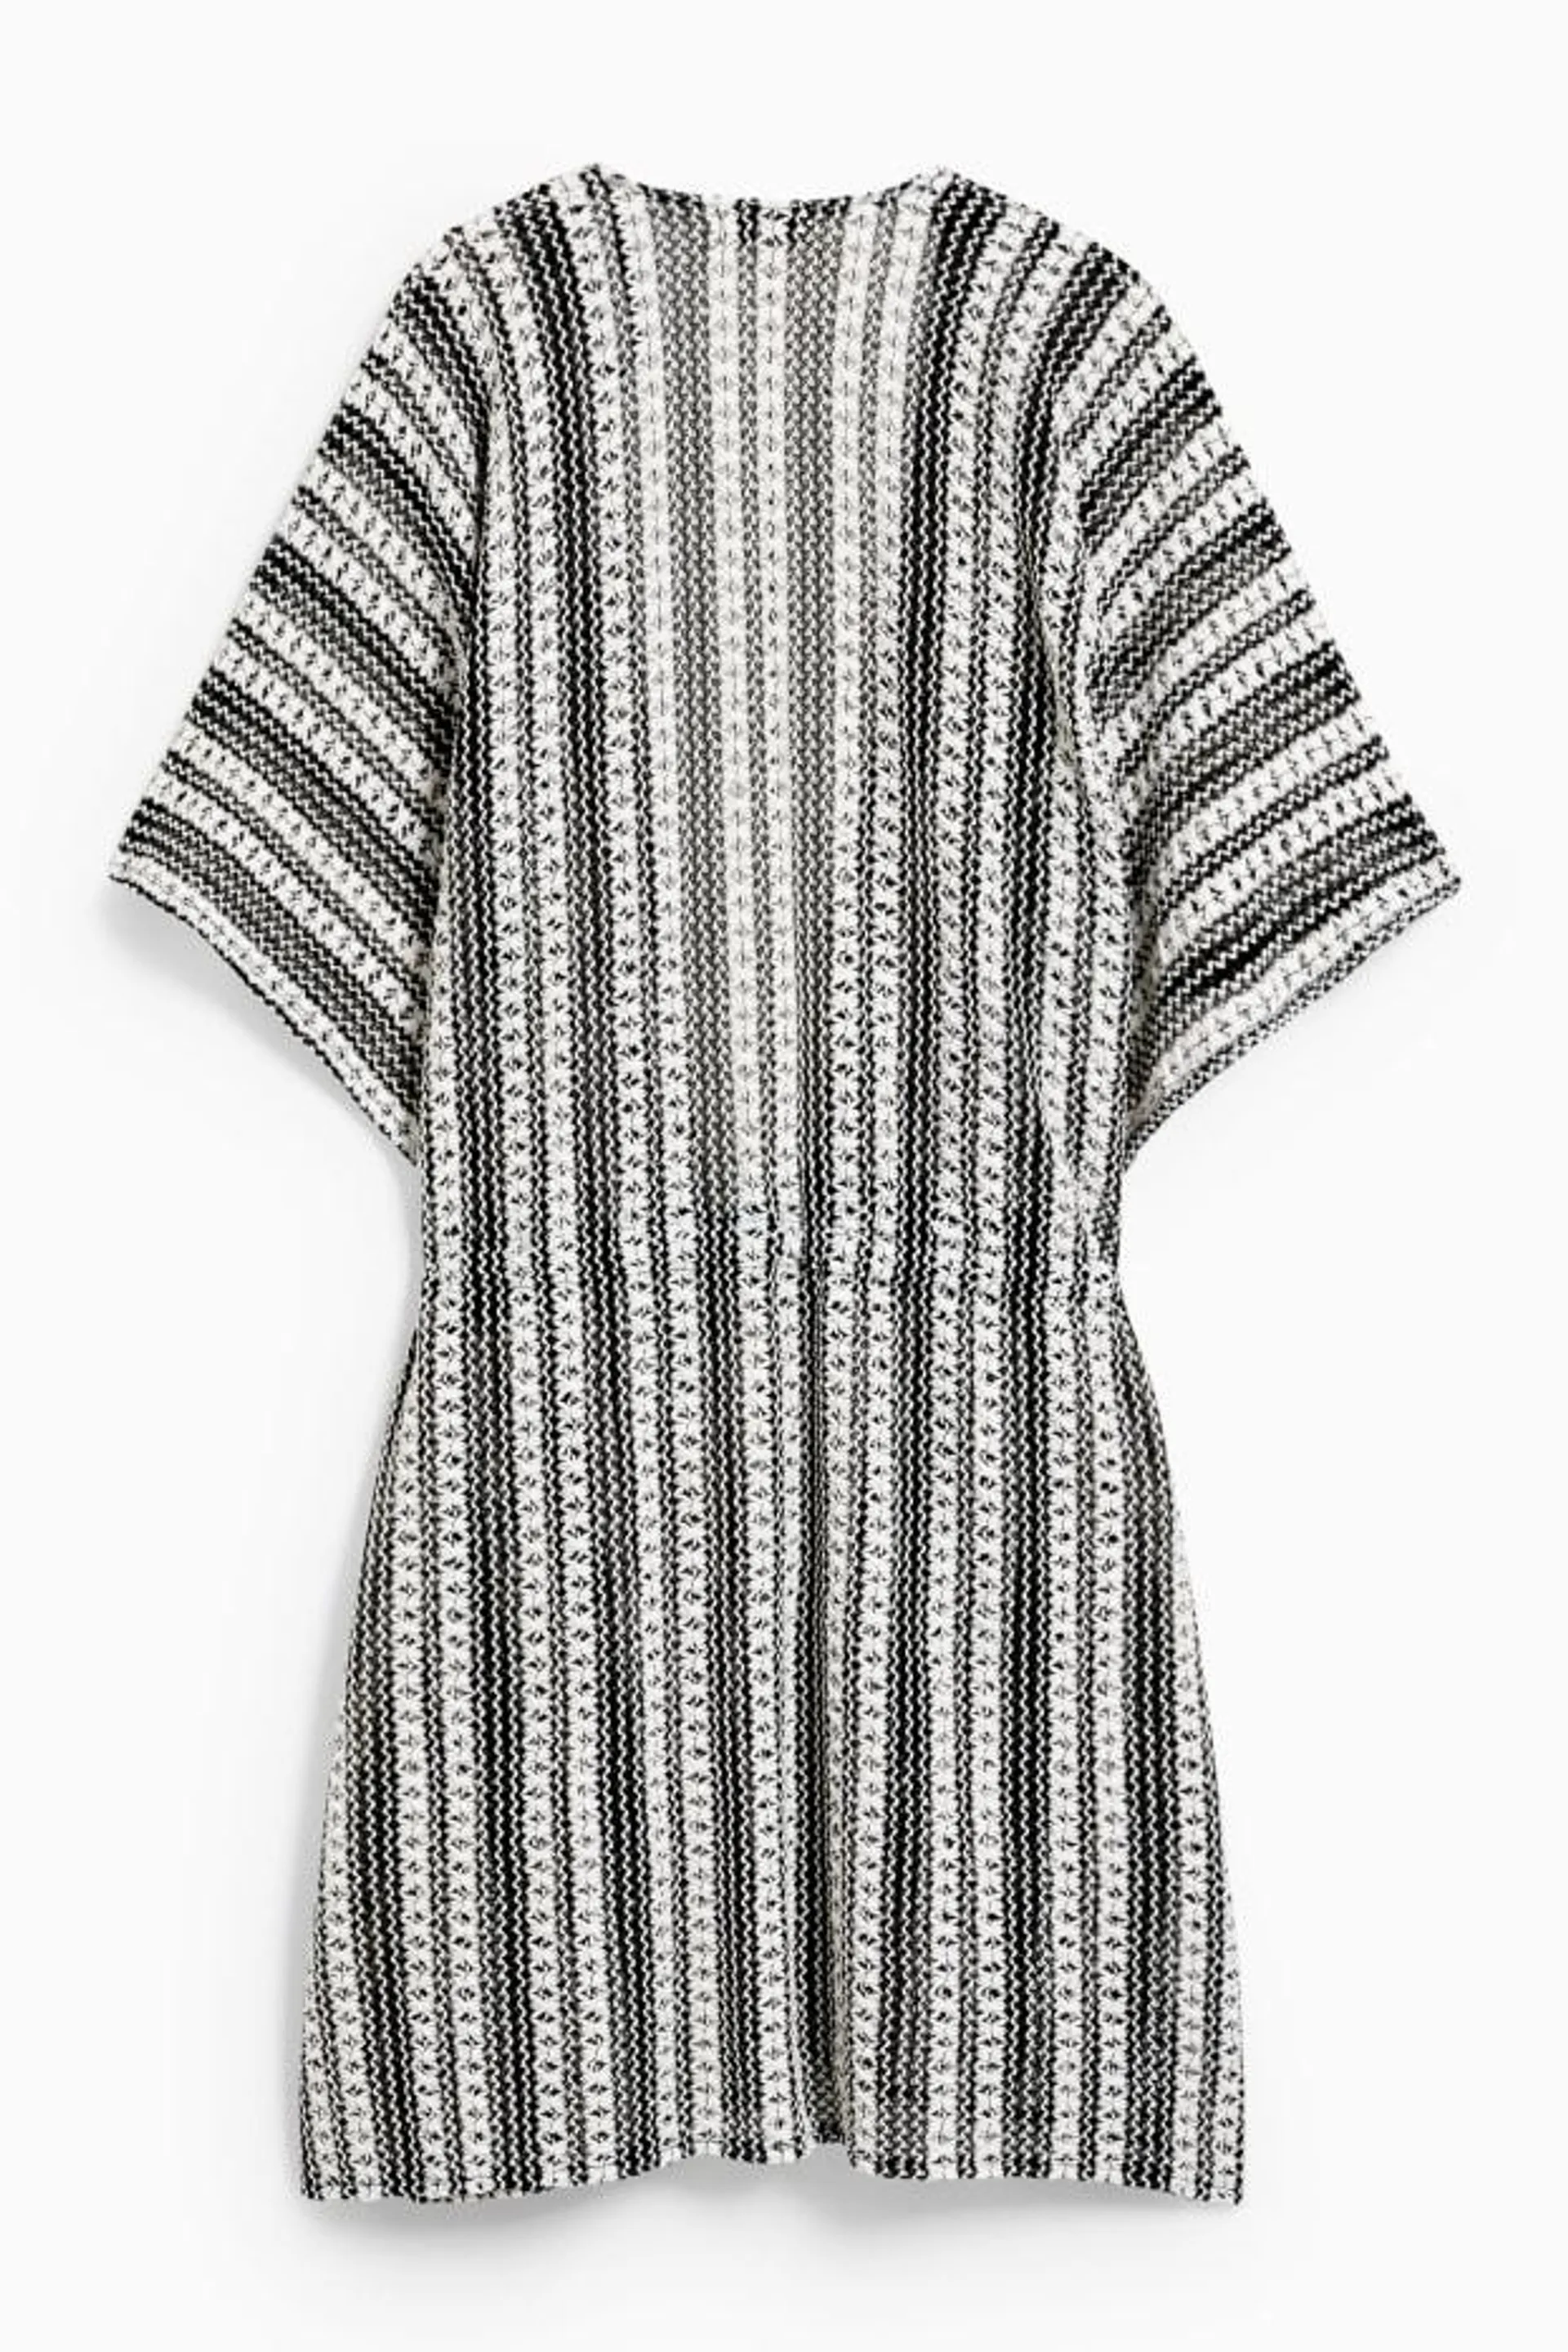 Kimono - striped